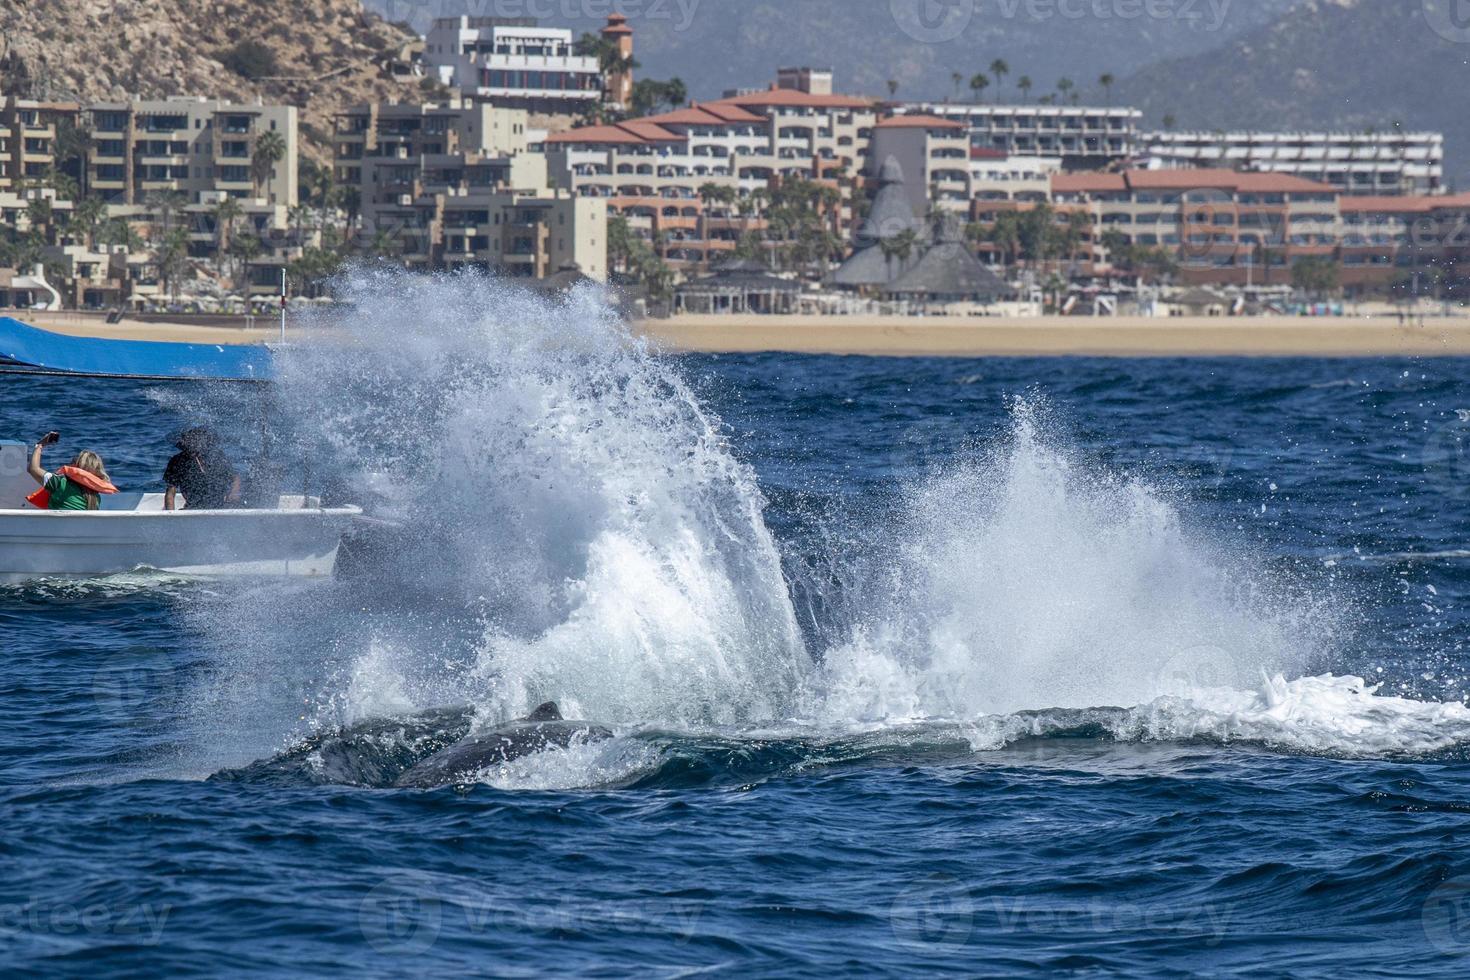 Cola de ballena jorobada golpeando frente al barco de avistamiento de ballenas en cabo san lucas méxico foto